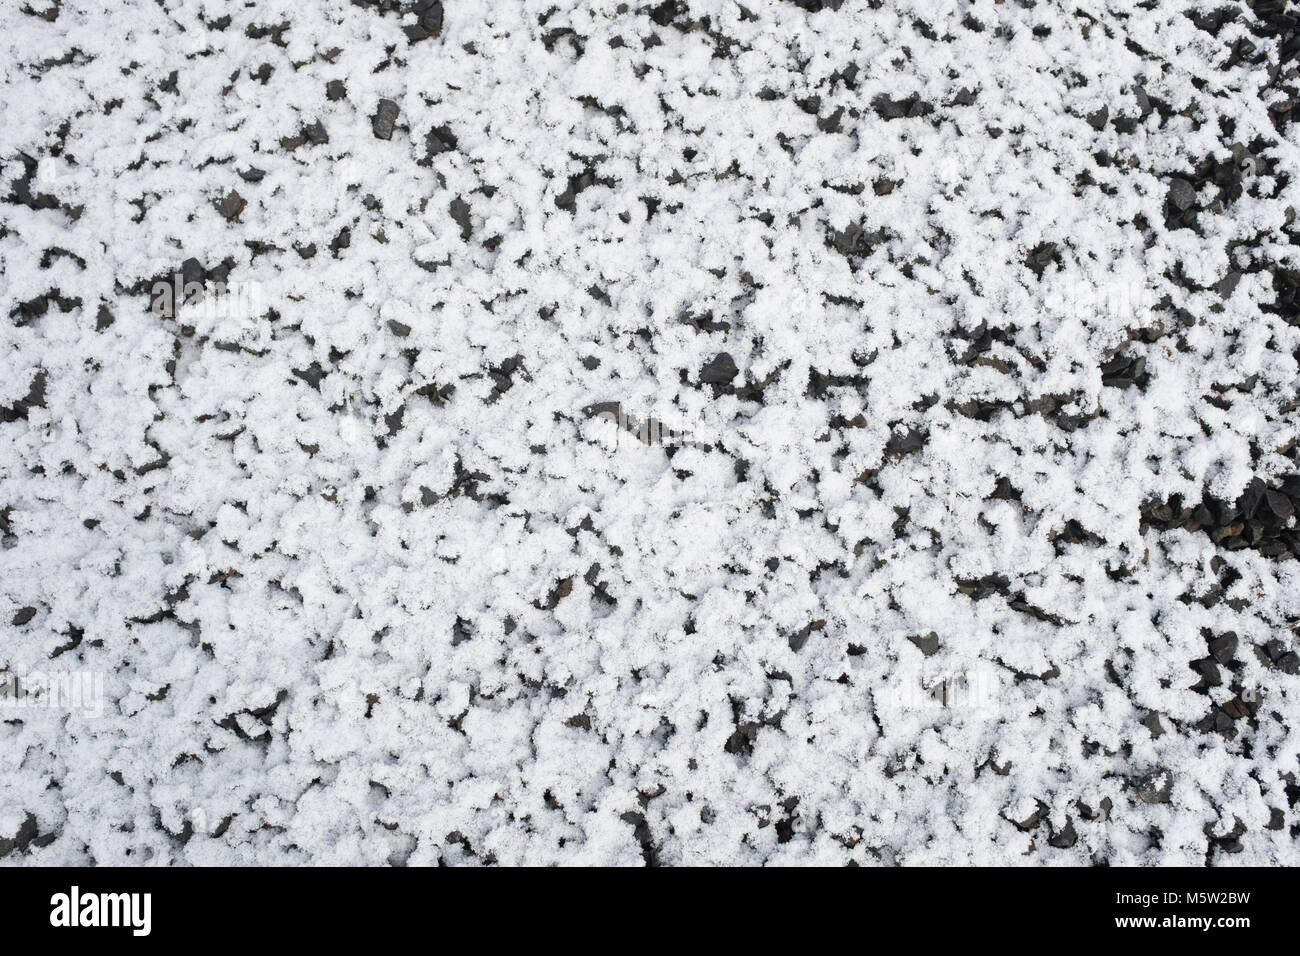 La nieve sobre la Tierra - el 70% de blancos, 30% de negros. Fondo de textura media sin adición de color Foto de stock